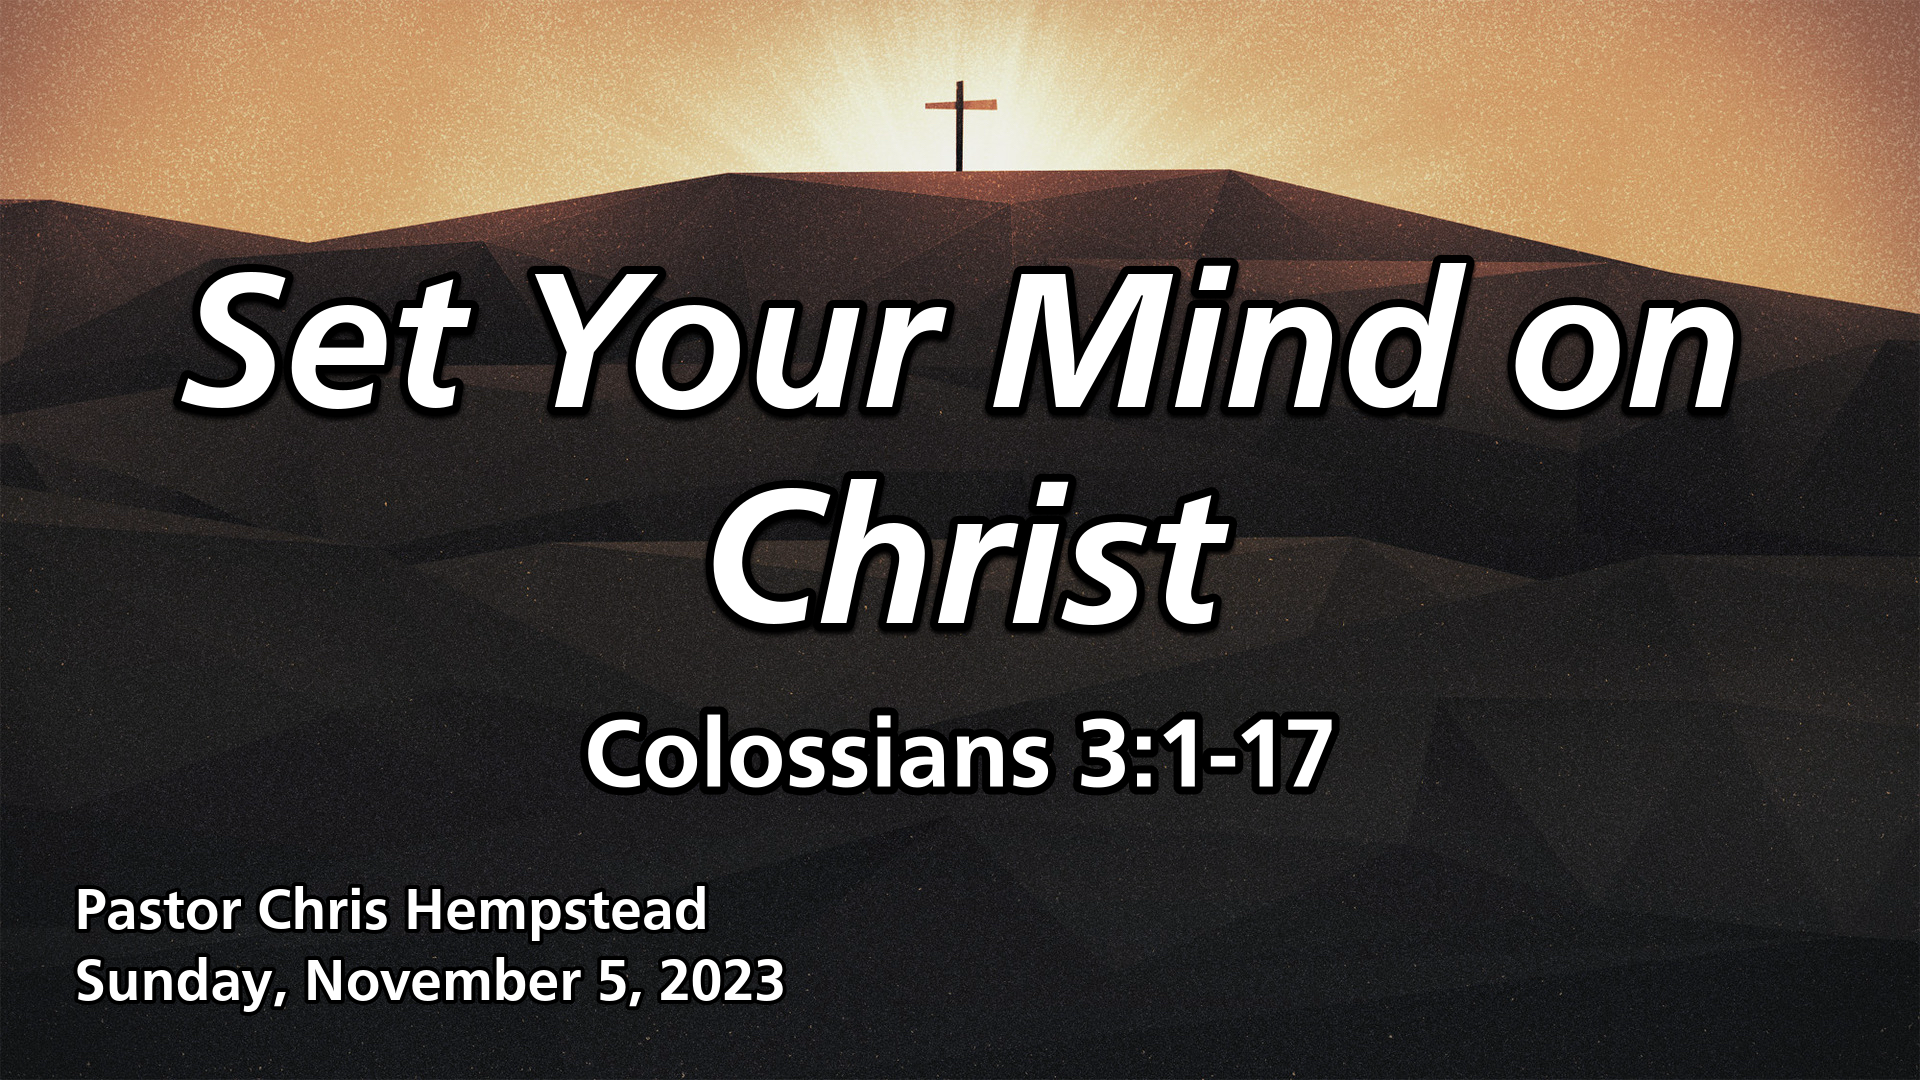 "Set Your Mind on Christ"